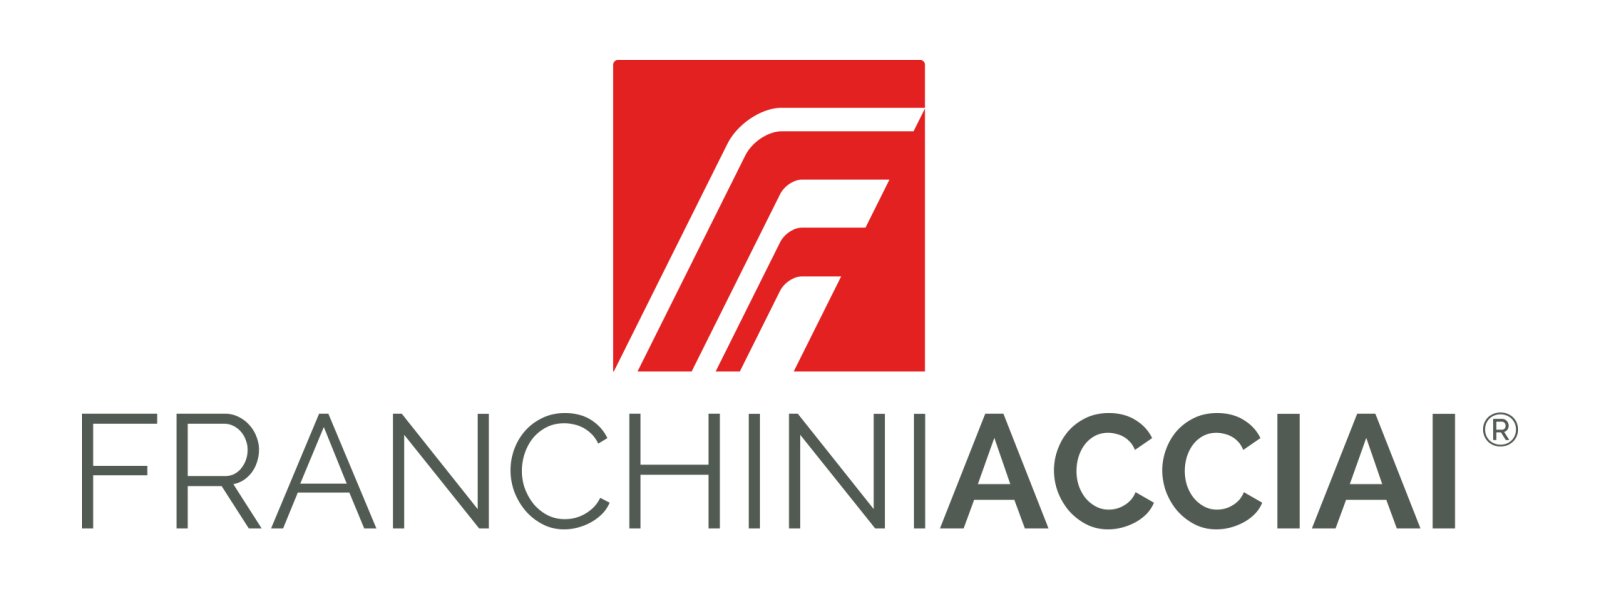 Logo FRANCHINI ACCIAI SPA